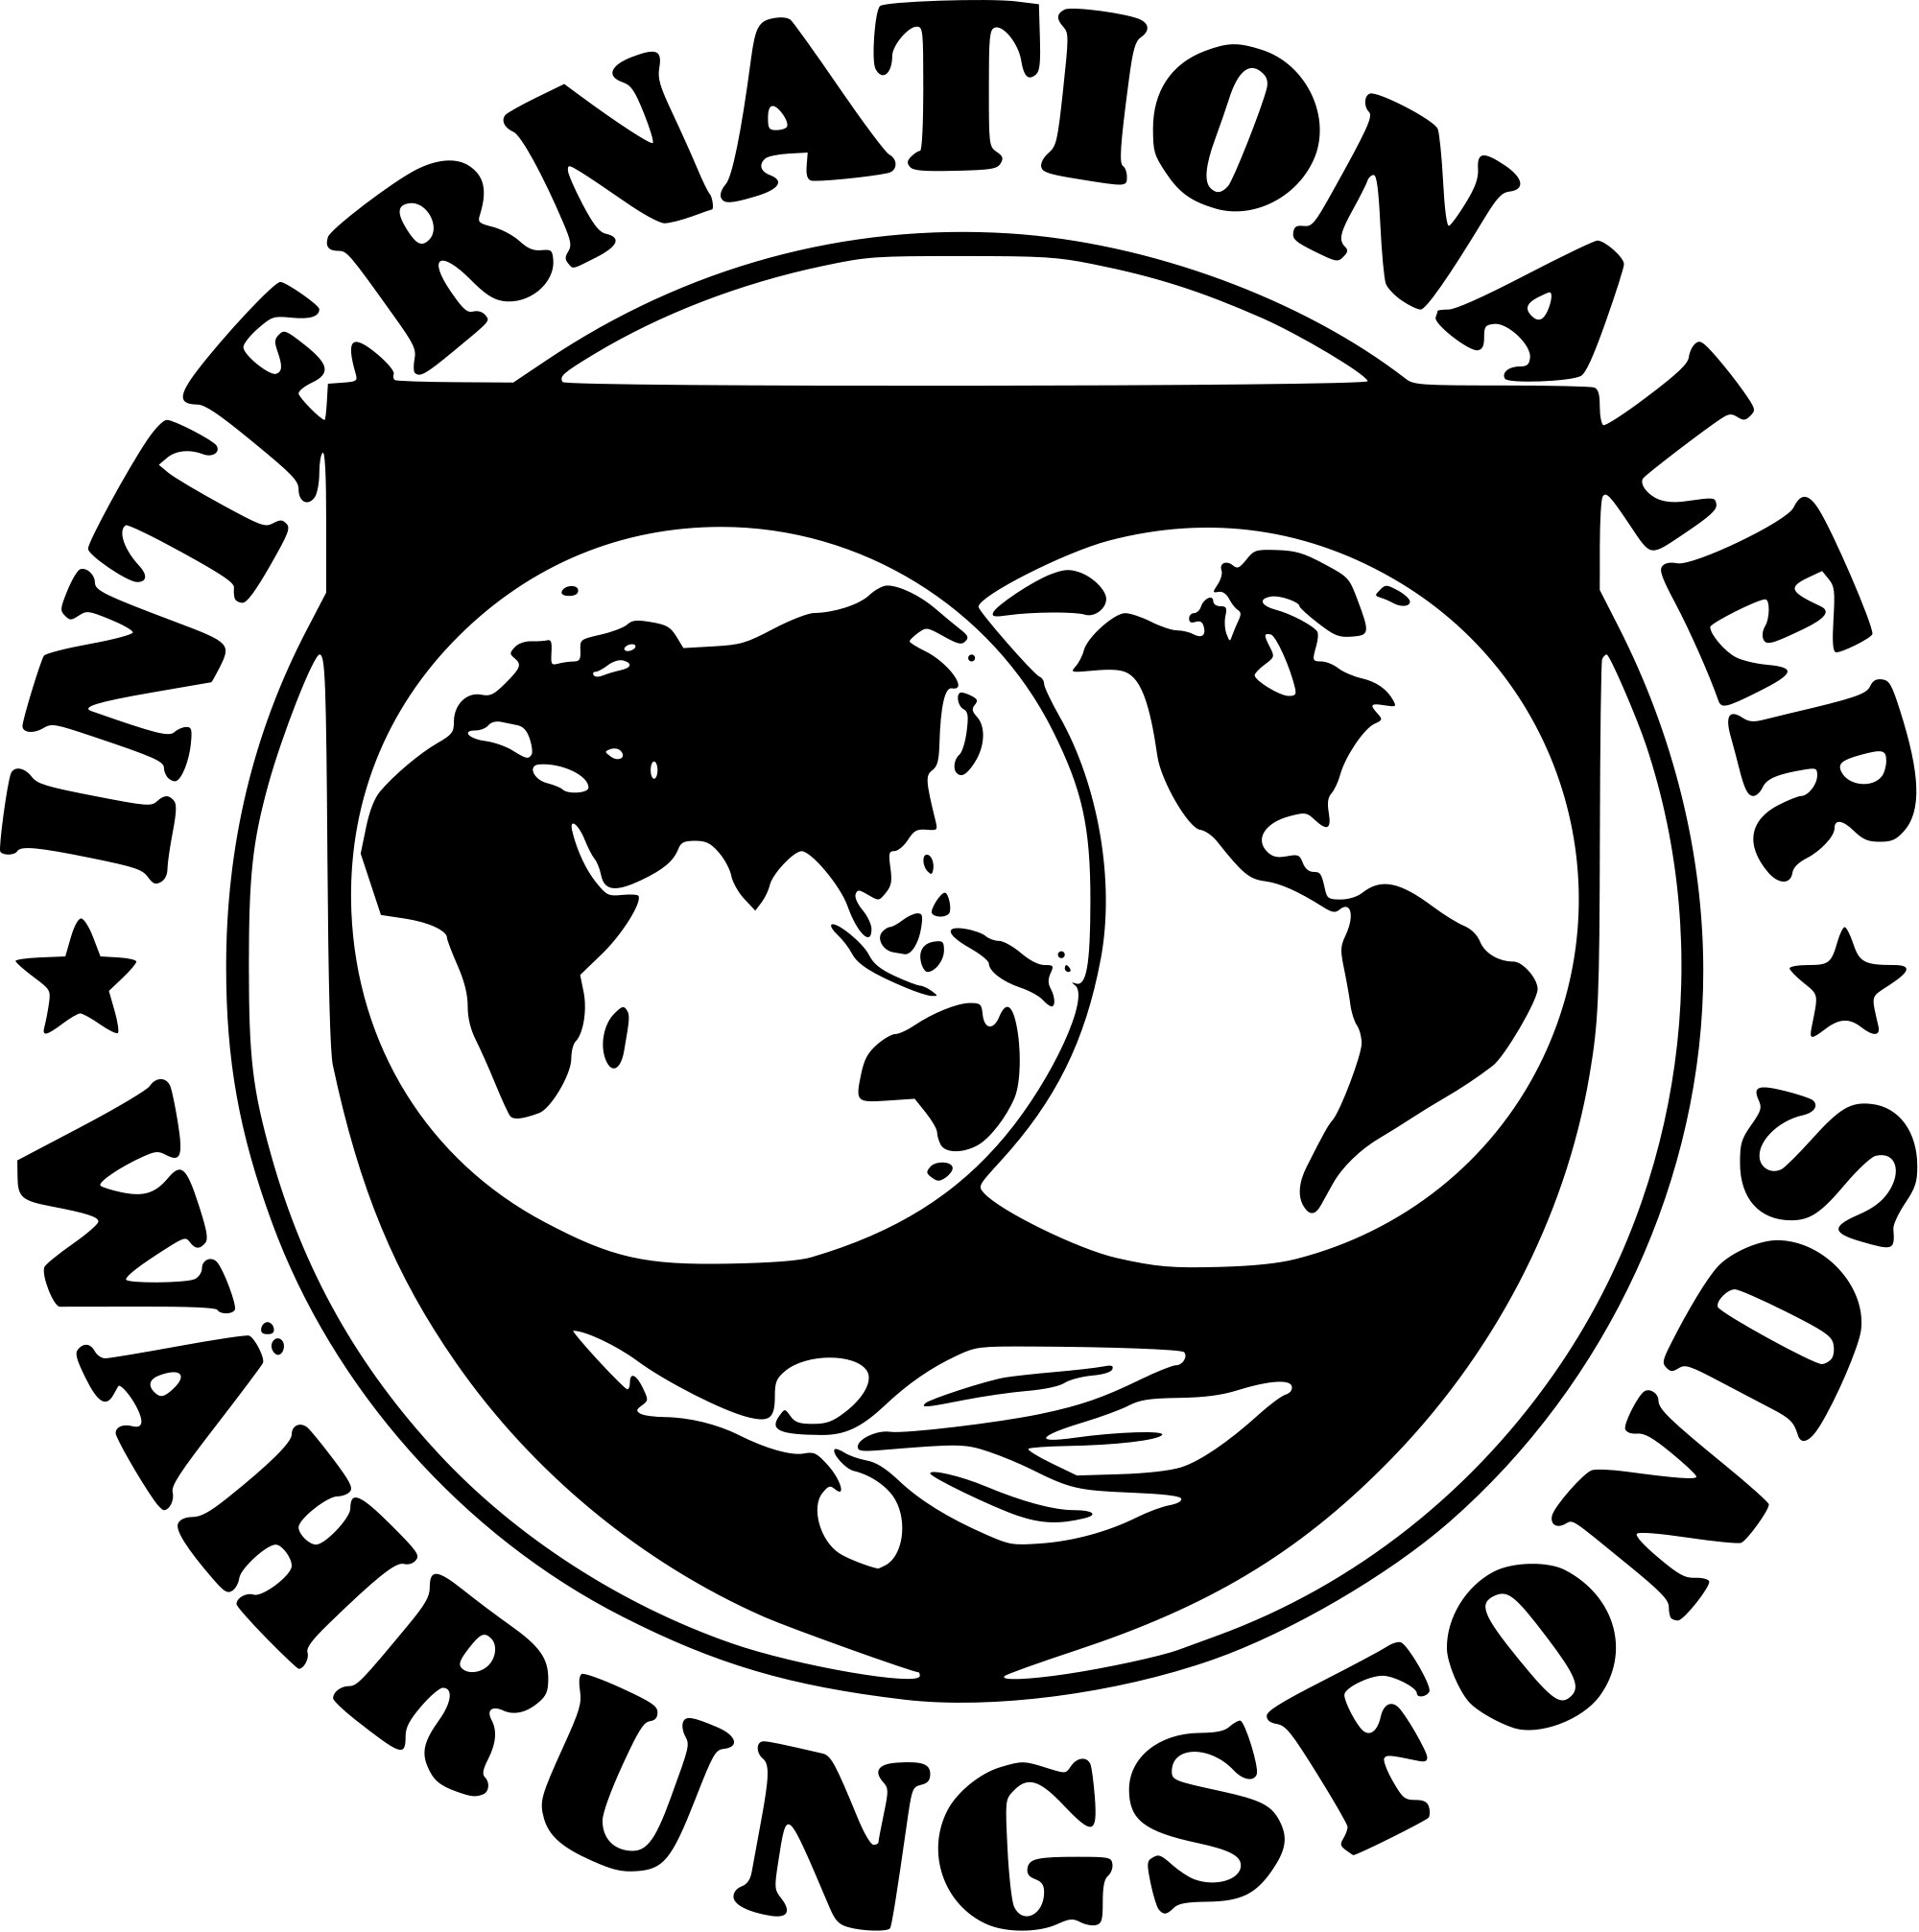 Всемирный валютный фонд. МВФ эмблема. Международный валютный фонд (МВФ). Международный валютный фонд флаг. Герб МВФ.